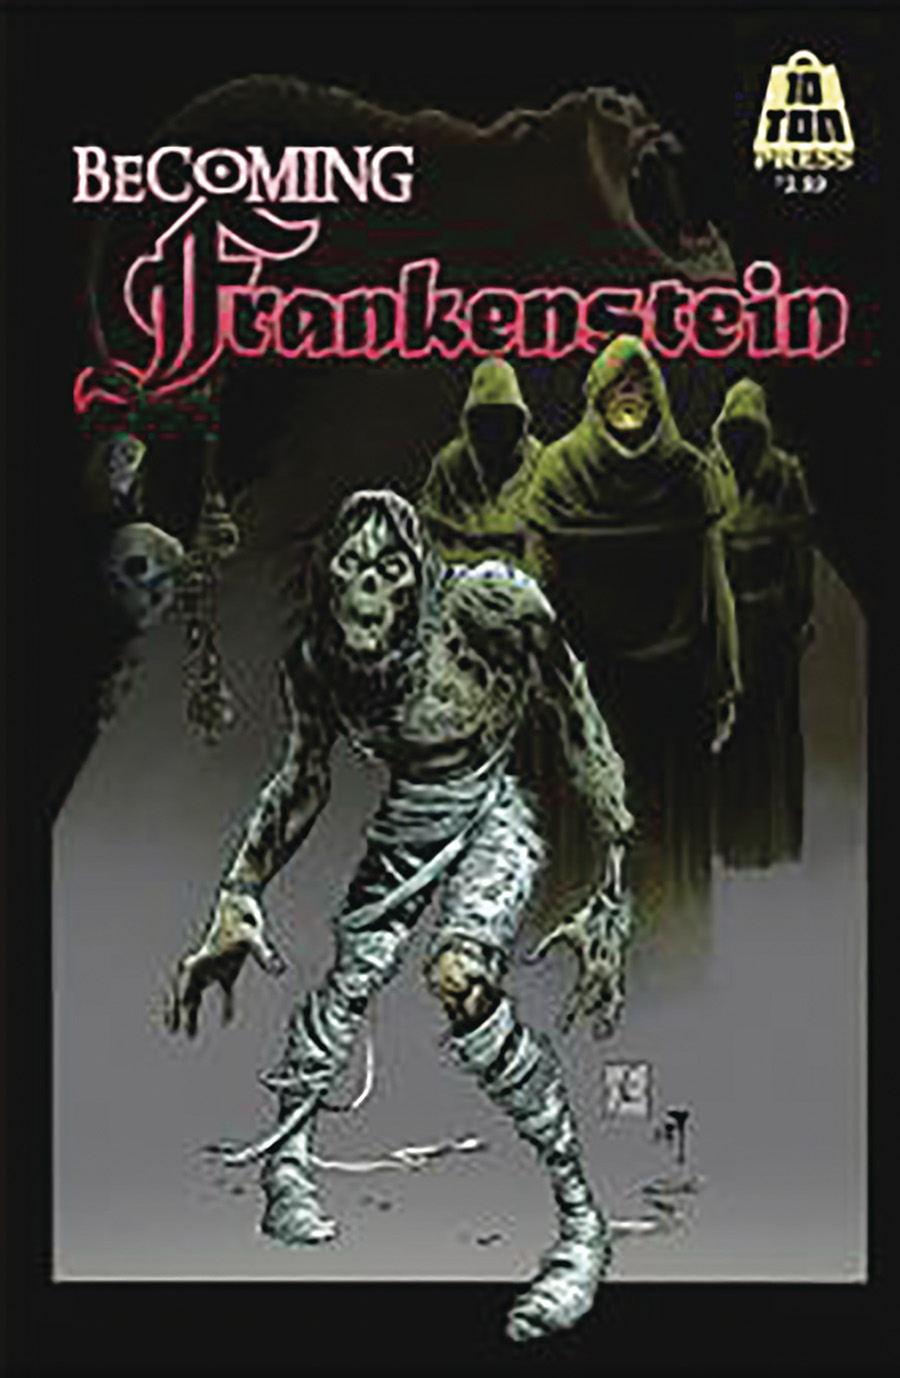 Becoming Frankenstein #4